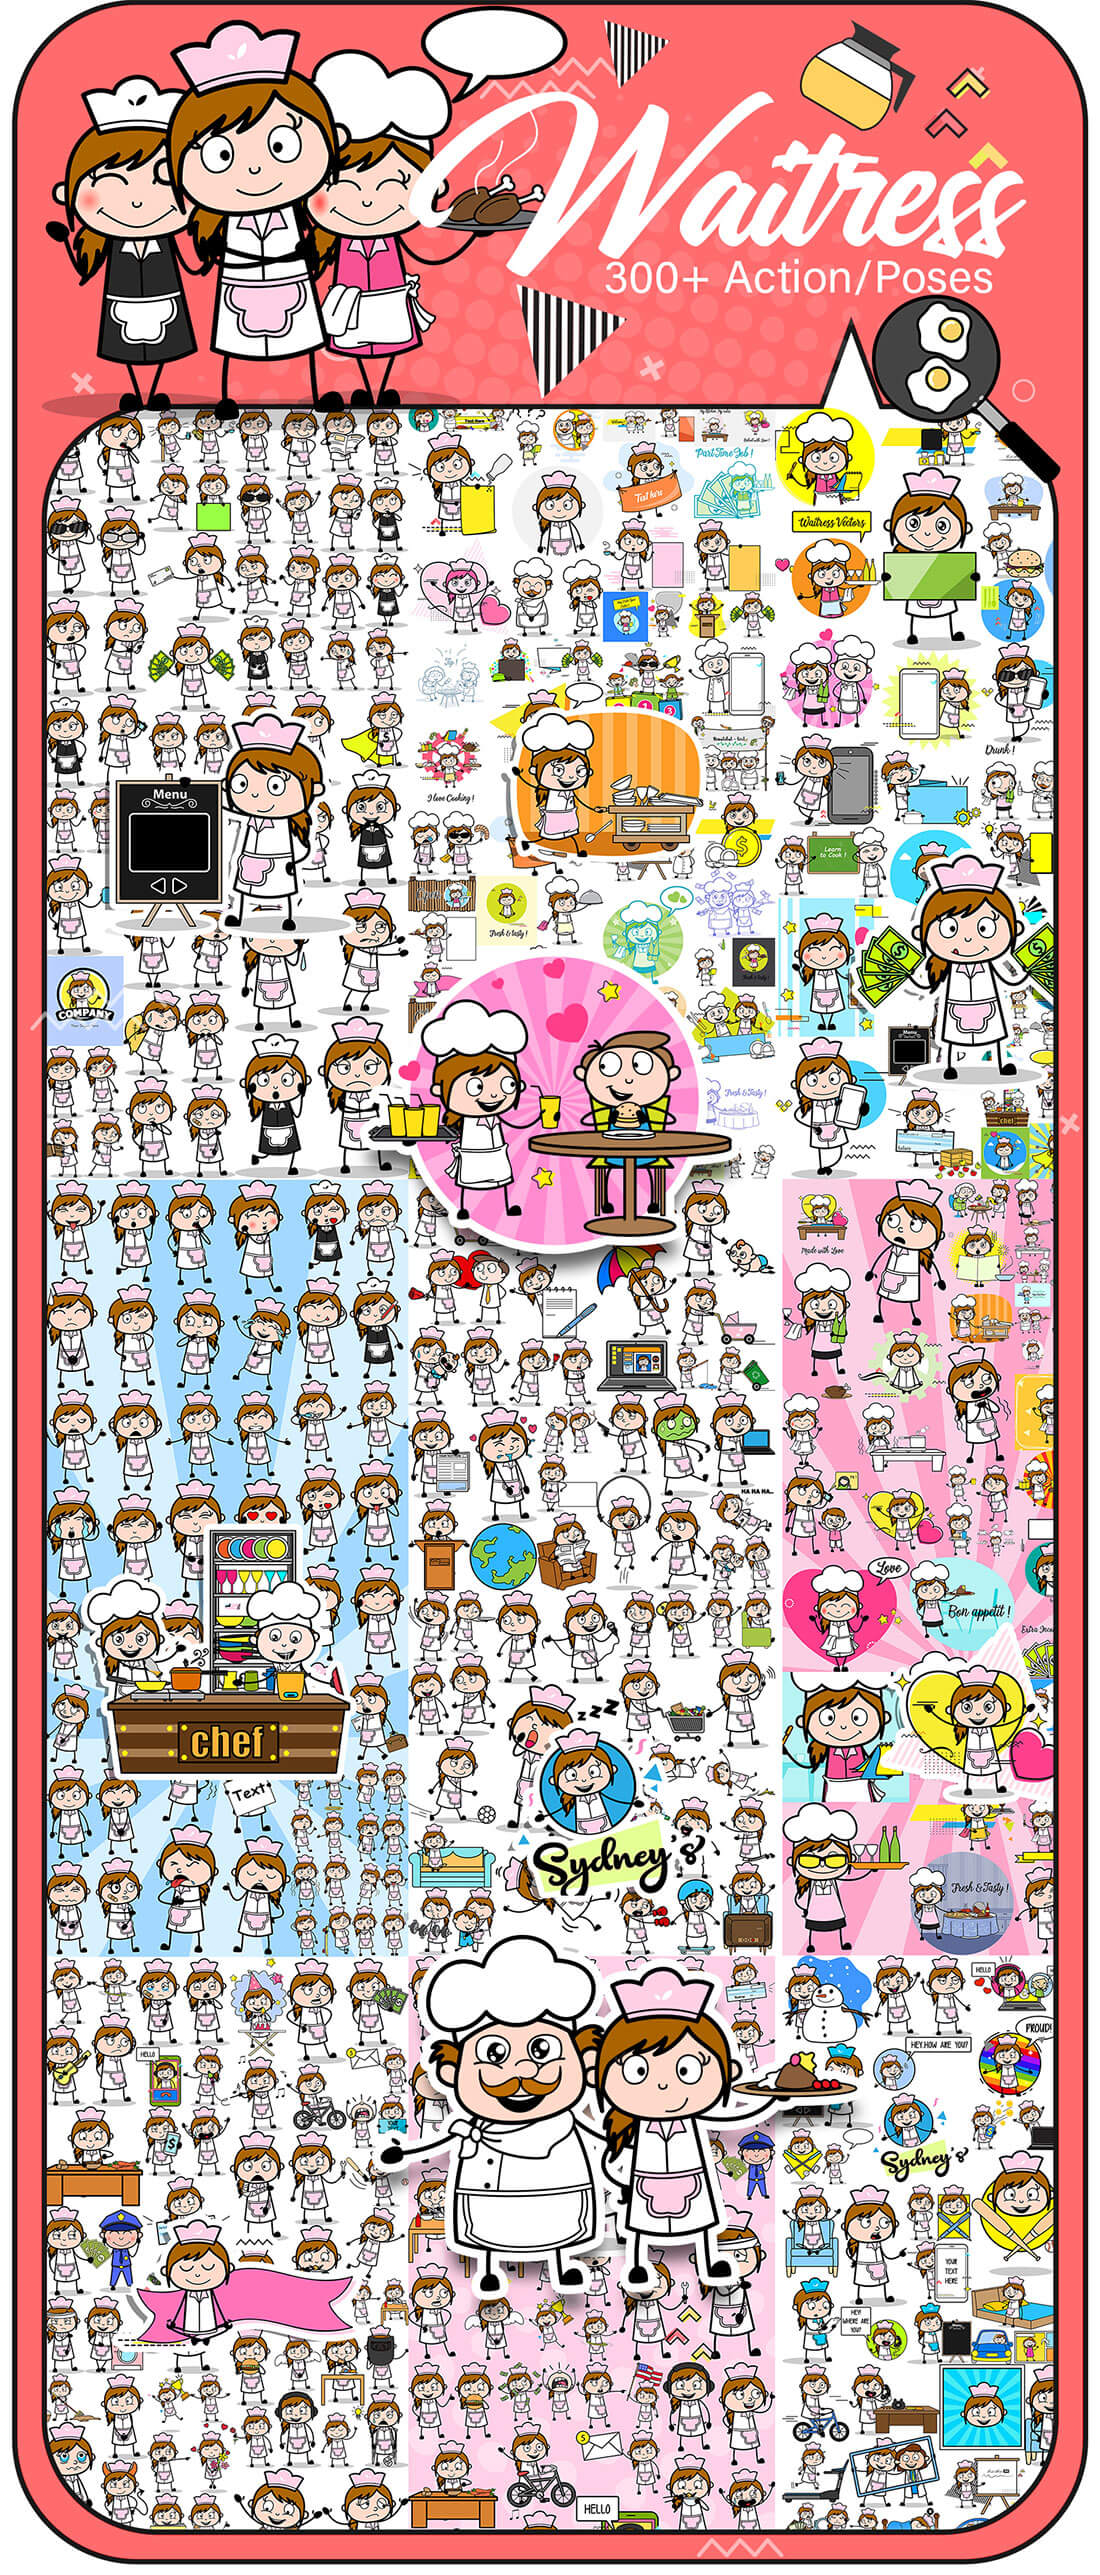 8,000+ Cartoon Character Vectors with BONUS materials